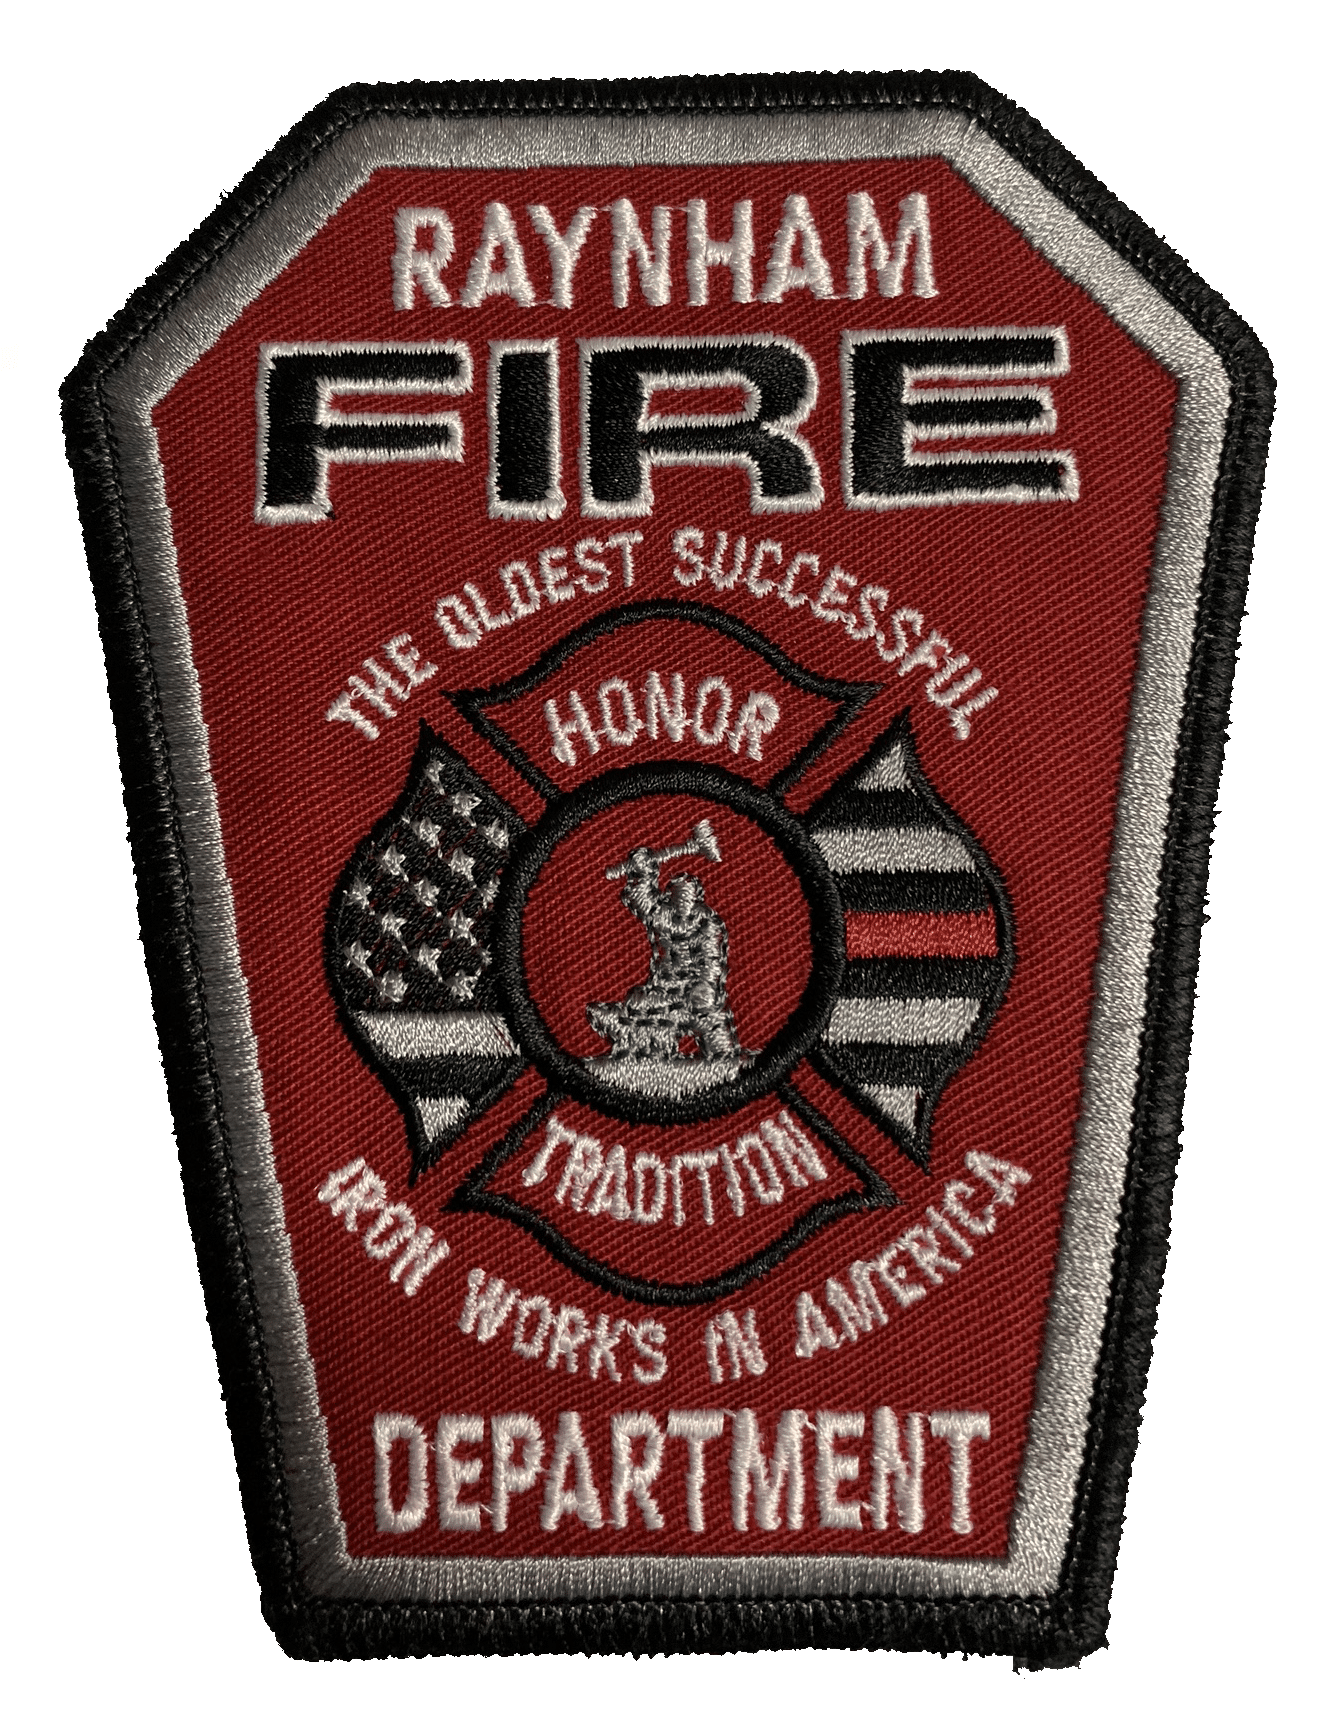 Raynham Fire Department patch